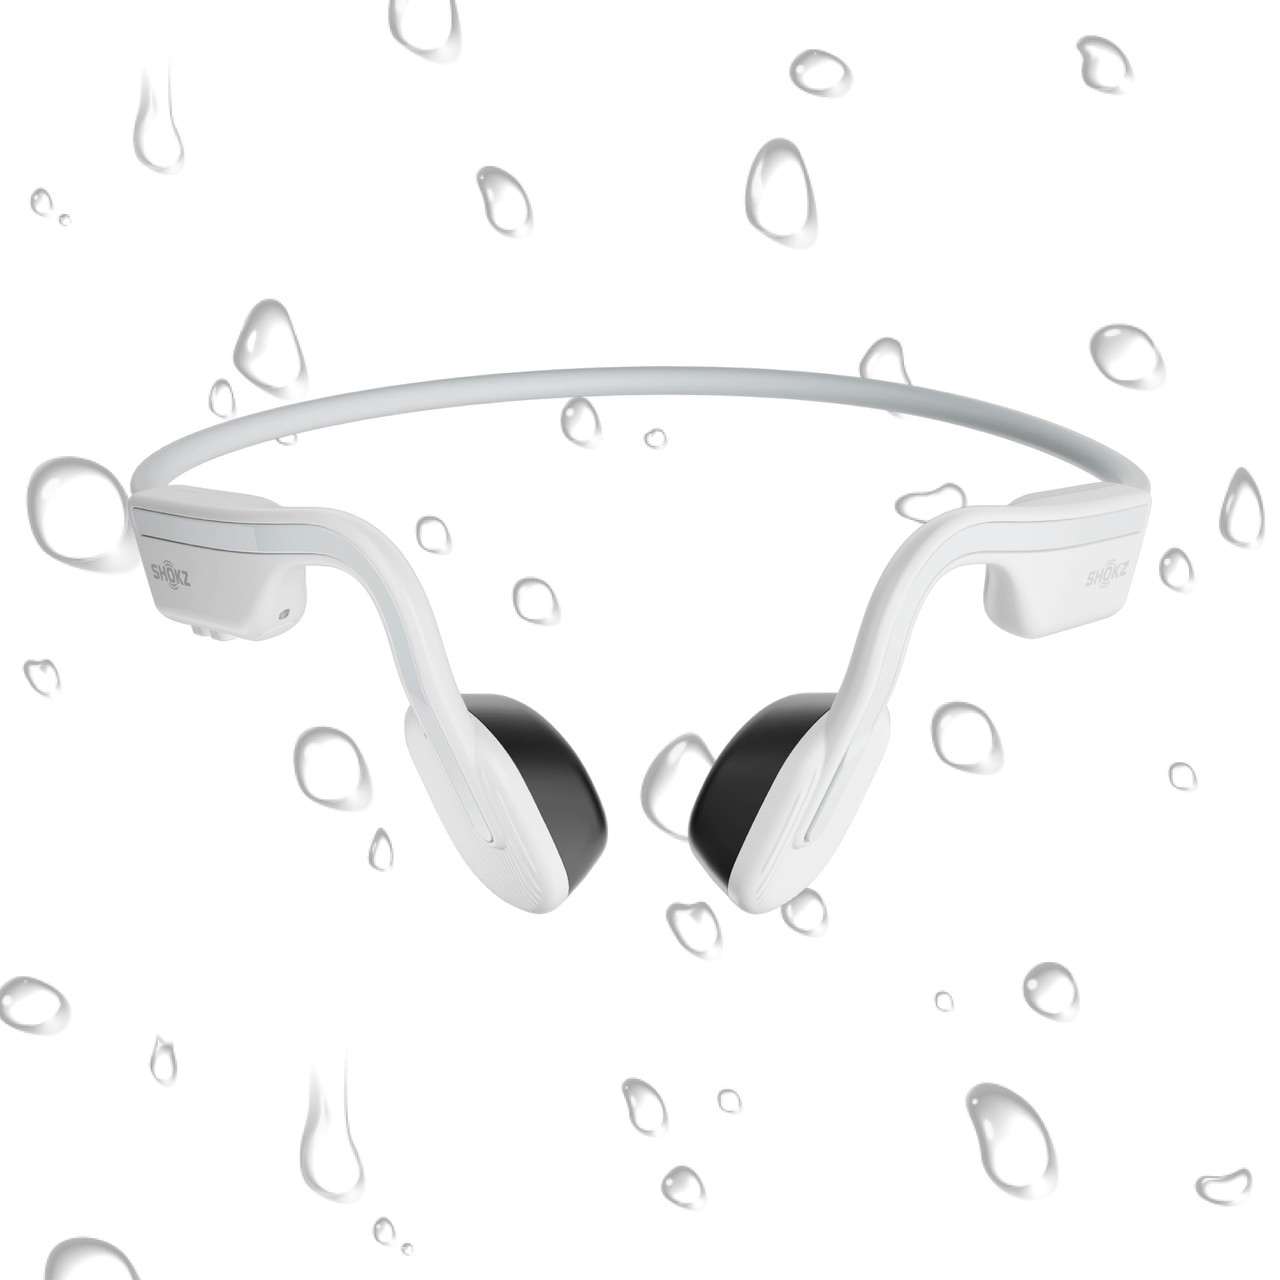 OpenMove Headphones White